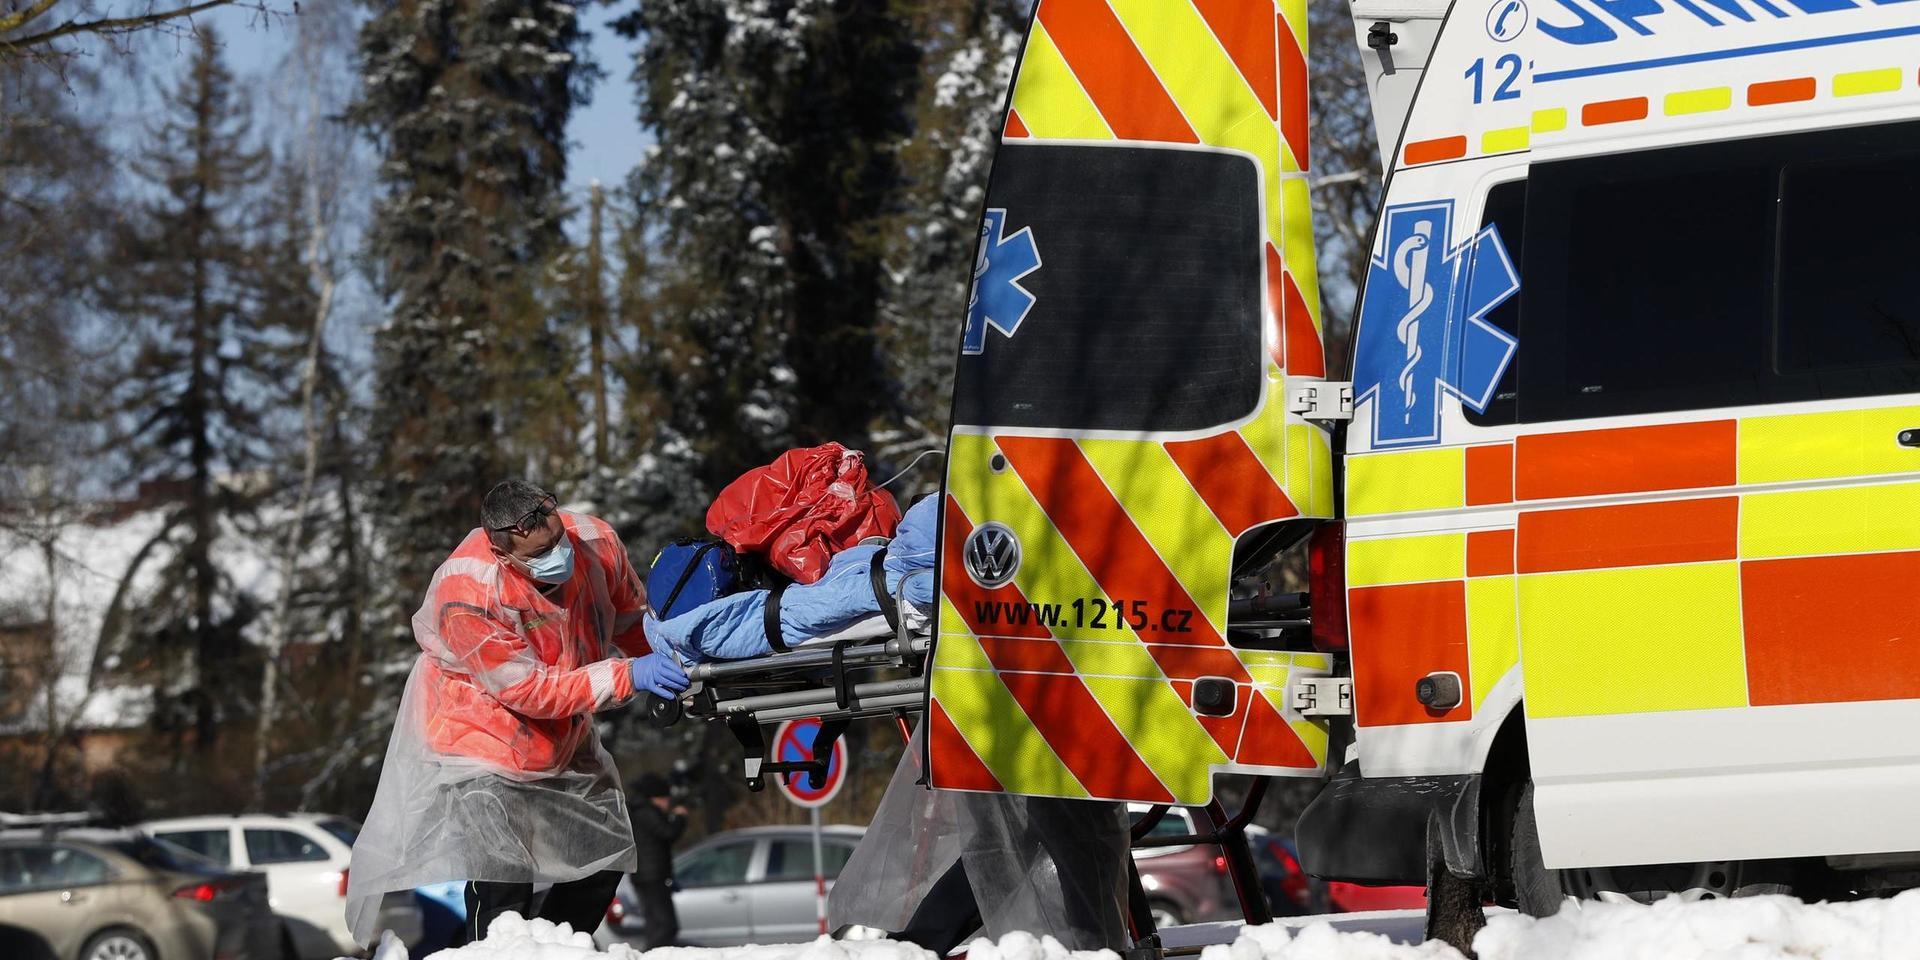 En covid-19-sjuk patient transporteras med ambulans i Cheb i Tjeckien. Arkivfoto.